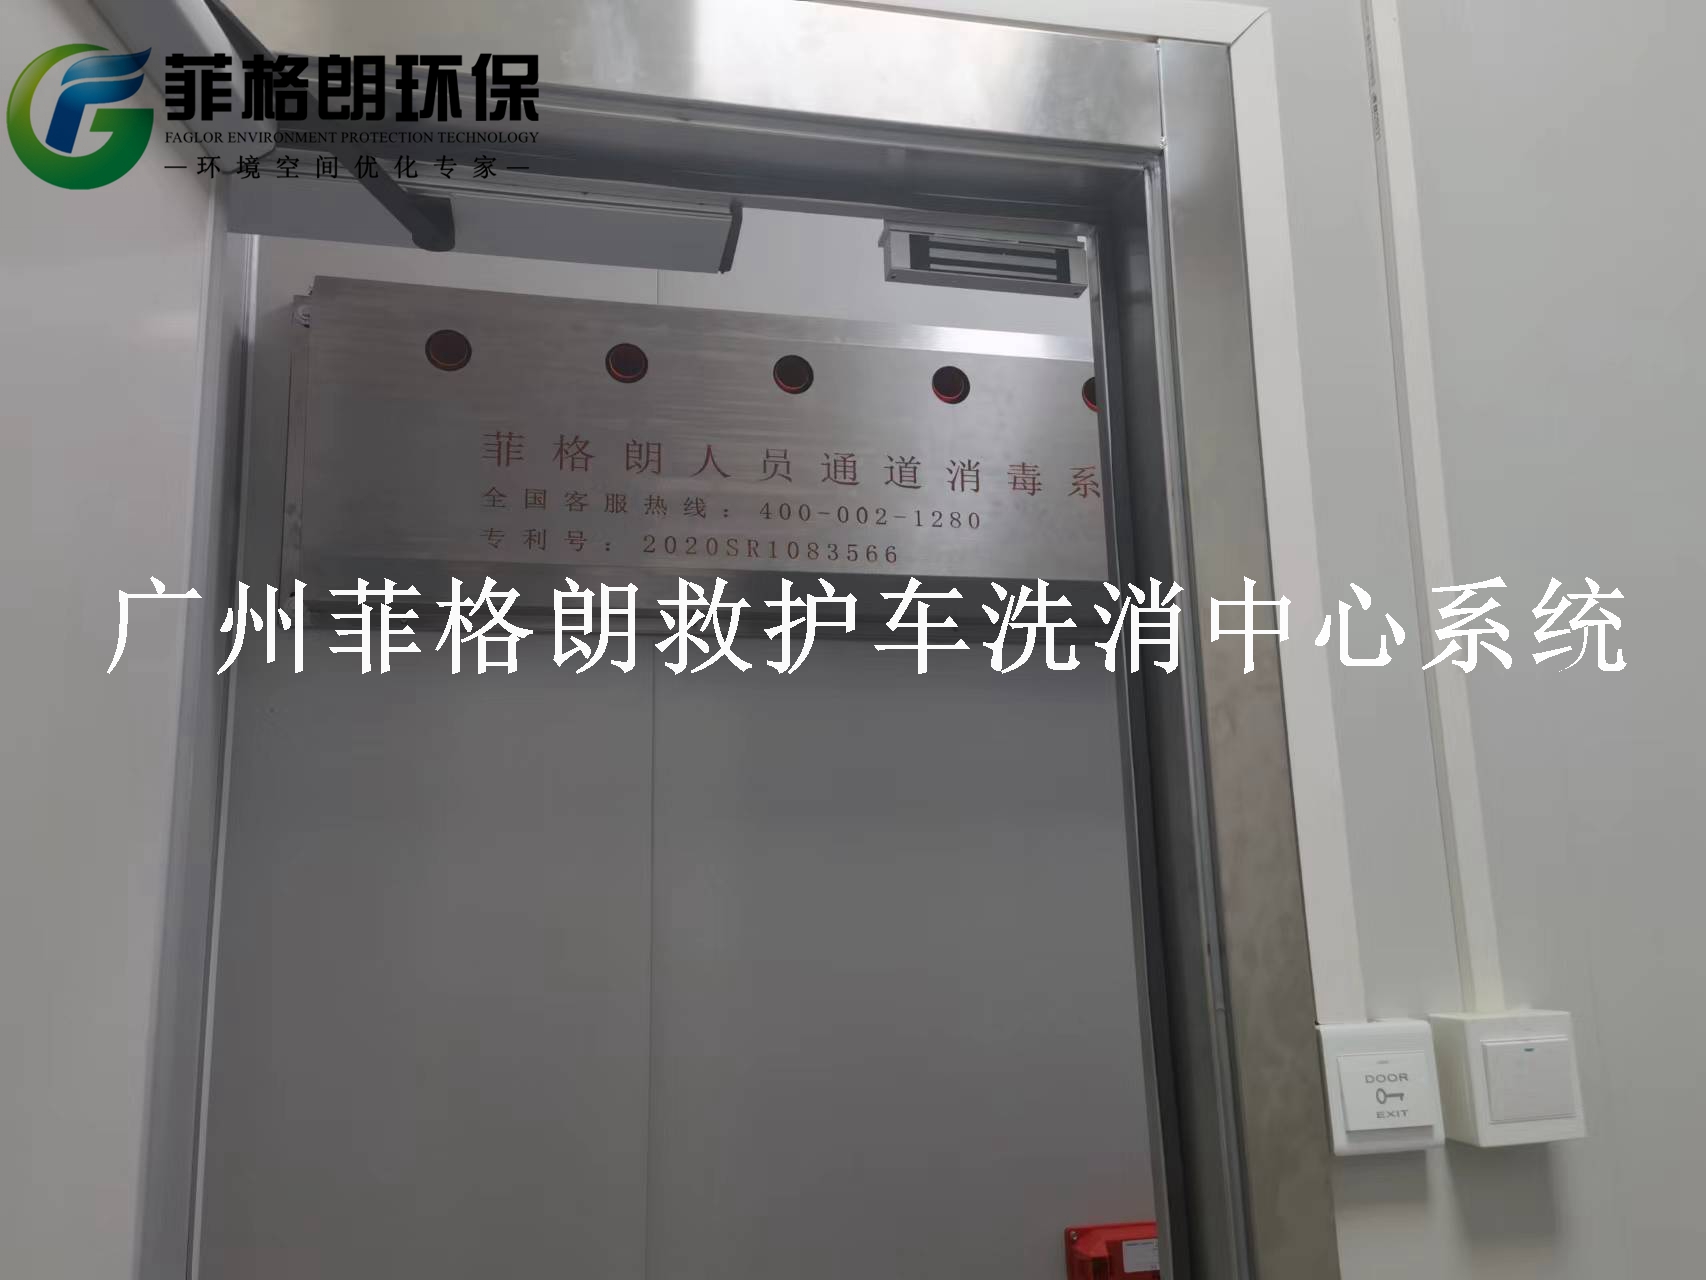 广东省妇幼保健院菲格朗救护车洗消中心系统8月正在施工插图3